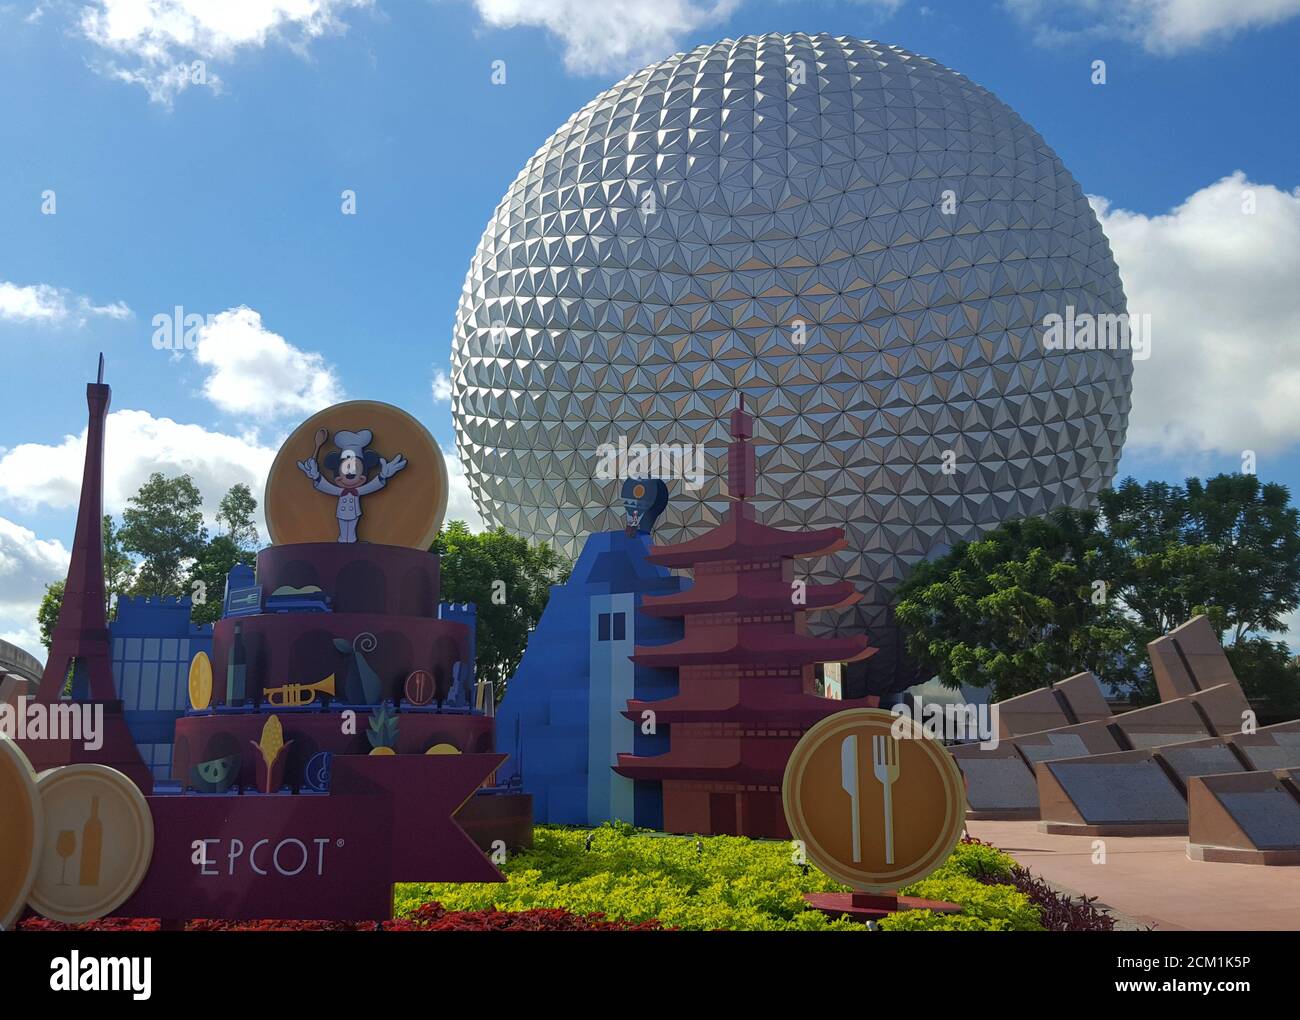 Raumschiff Erde, die riesige Kugel in Walt Disney World, Orlando Florida, USA Stockfoto